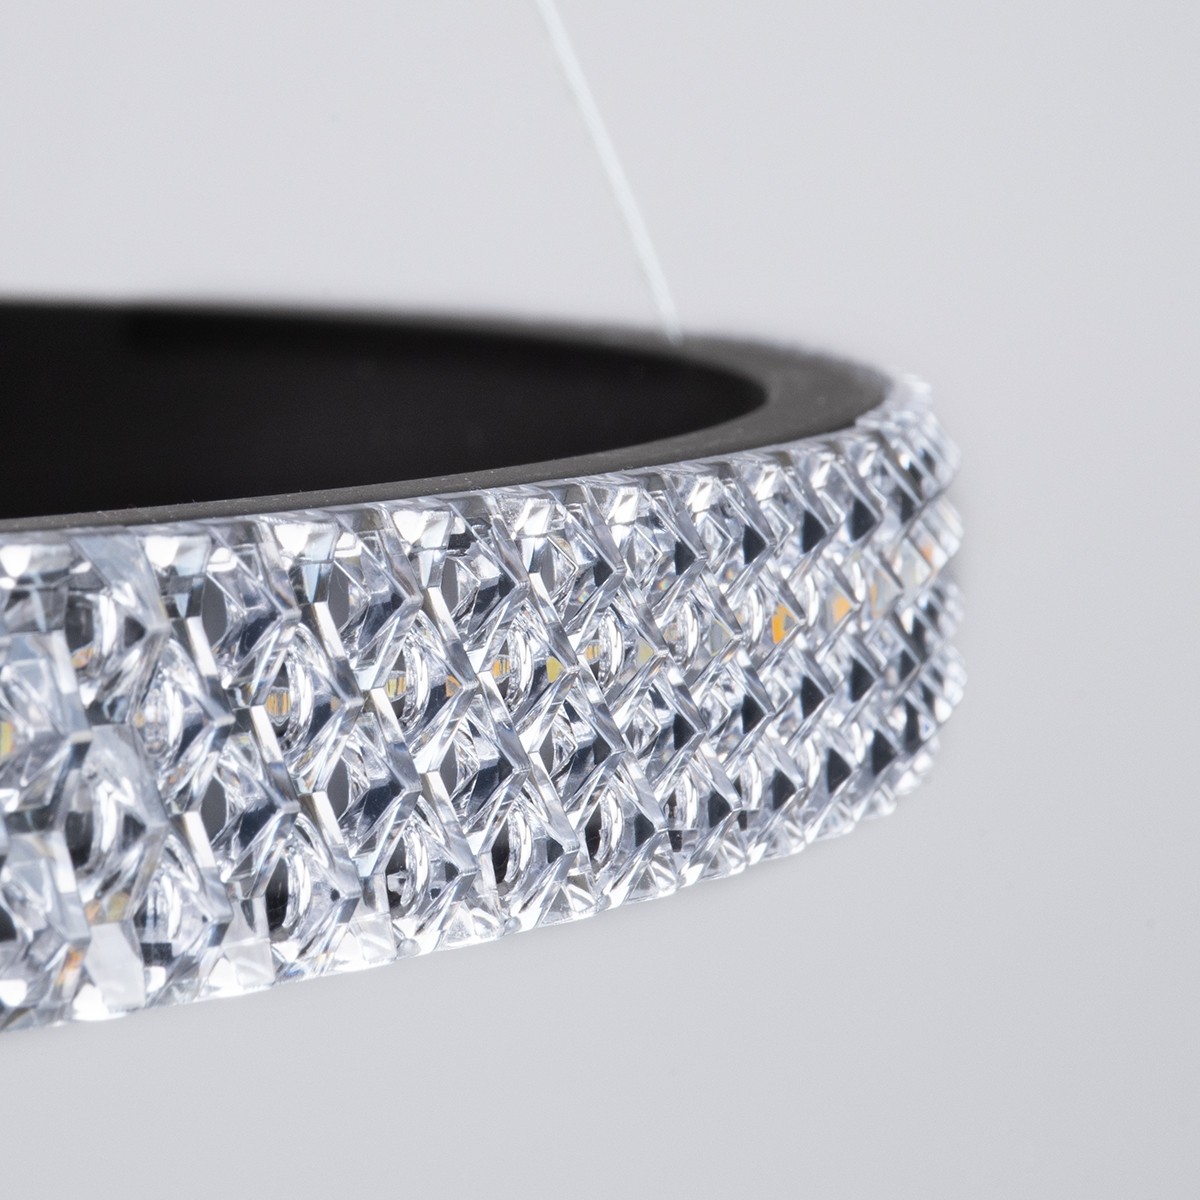 LED Κρεμαστό Φωτιστικό Μαύρο DIAMOND TRIO Κύκλος 120W με Εναλλαγή Φωτισμού μέσω Τηλεχειριστηρίου Dimmable Φ40+60+80cm - 61138